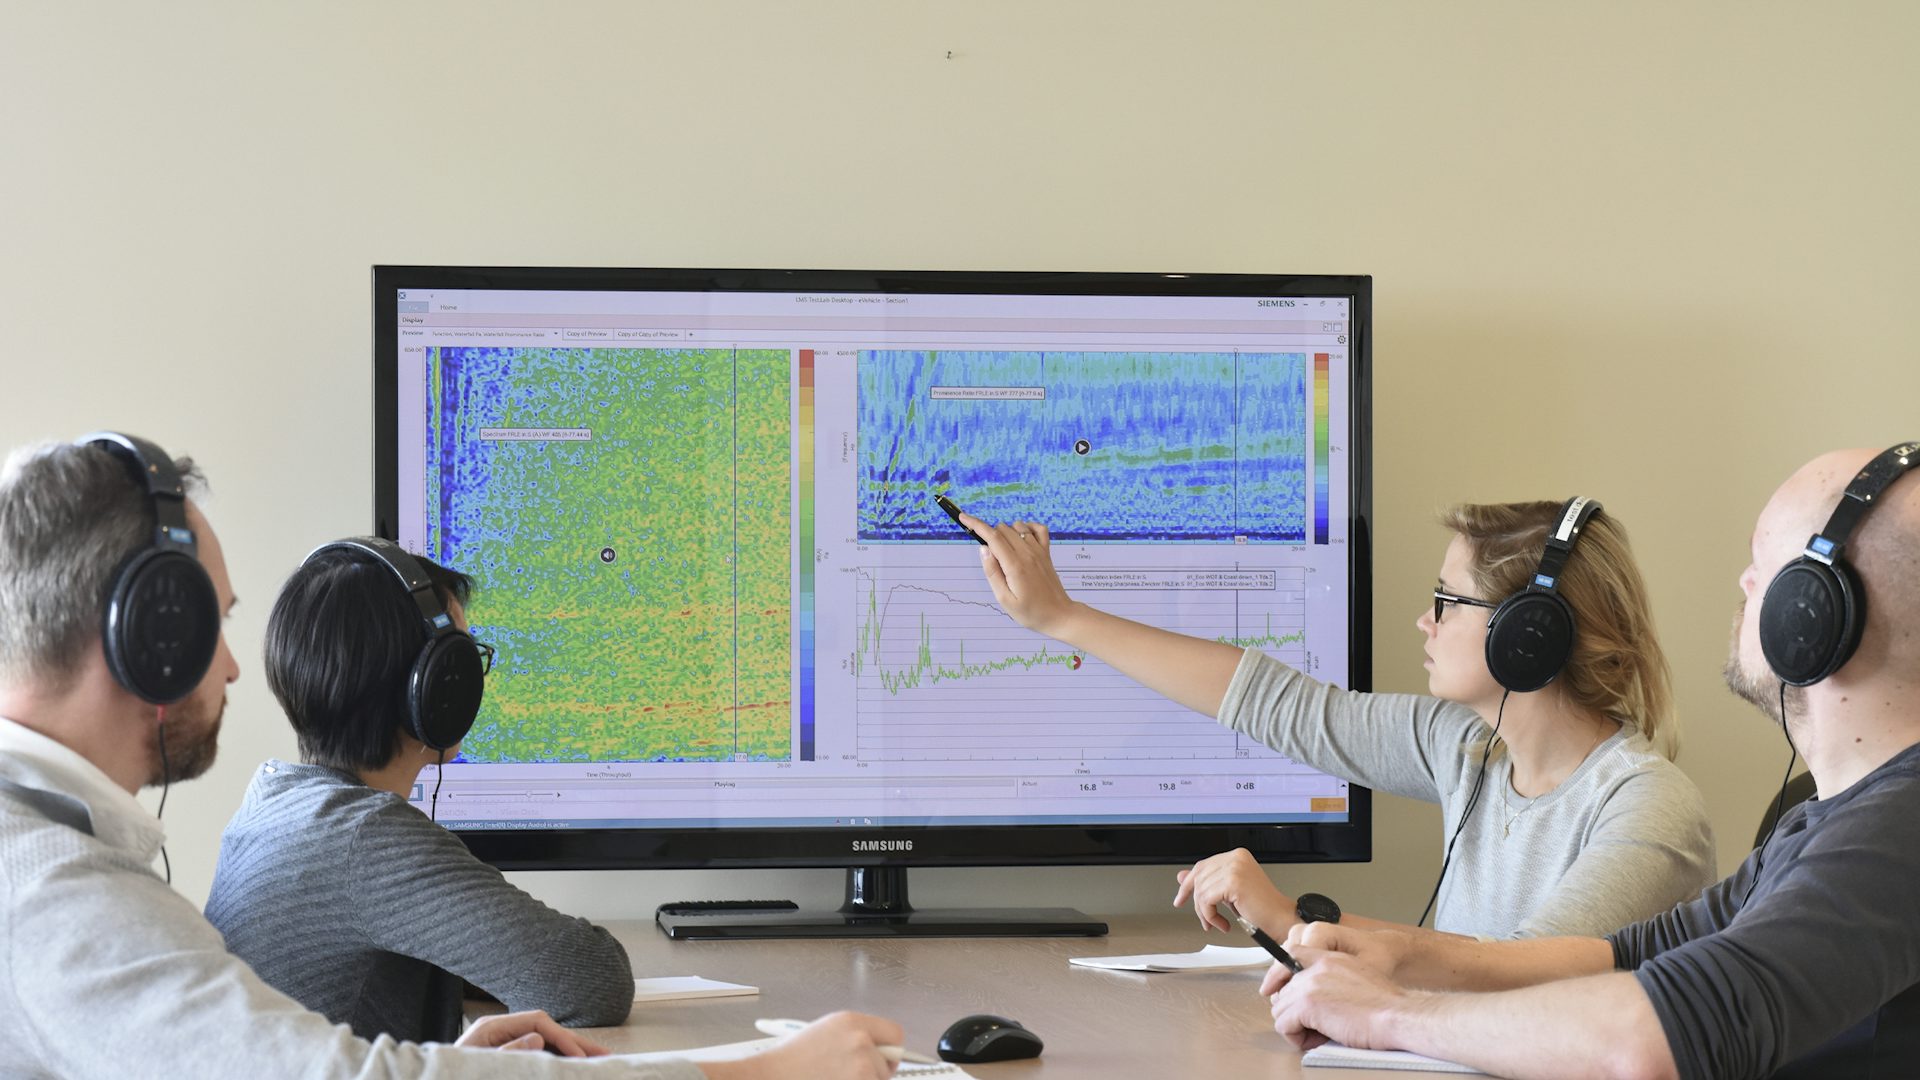 画面上のSimcenter音響試験ツールを見ている人のグループの画像。